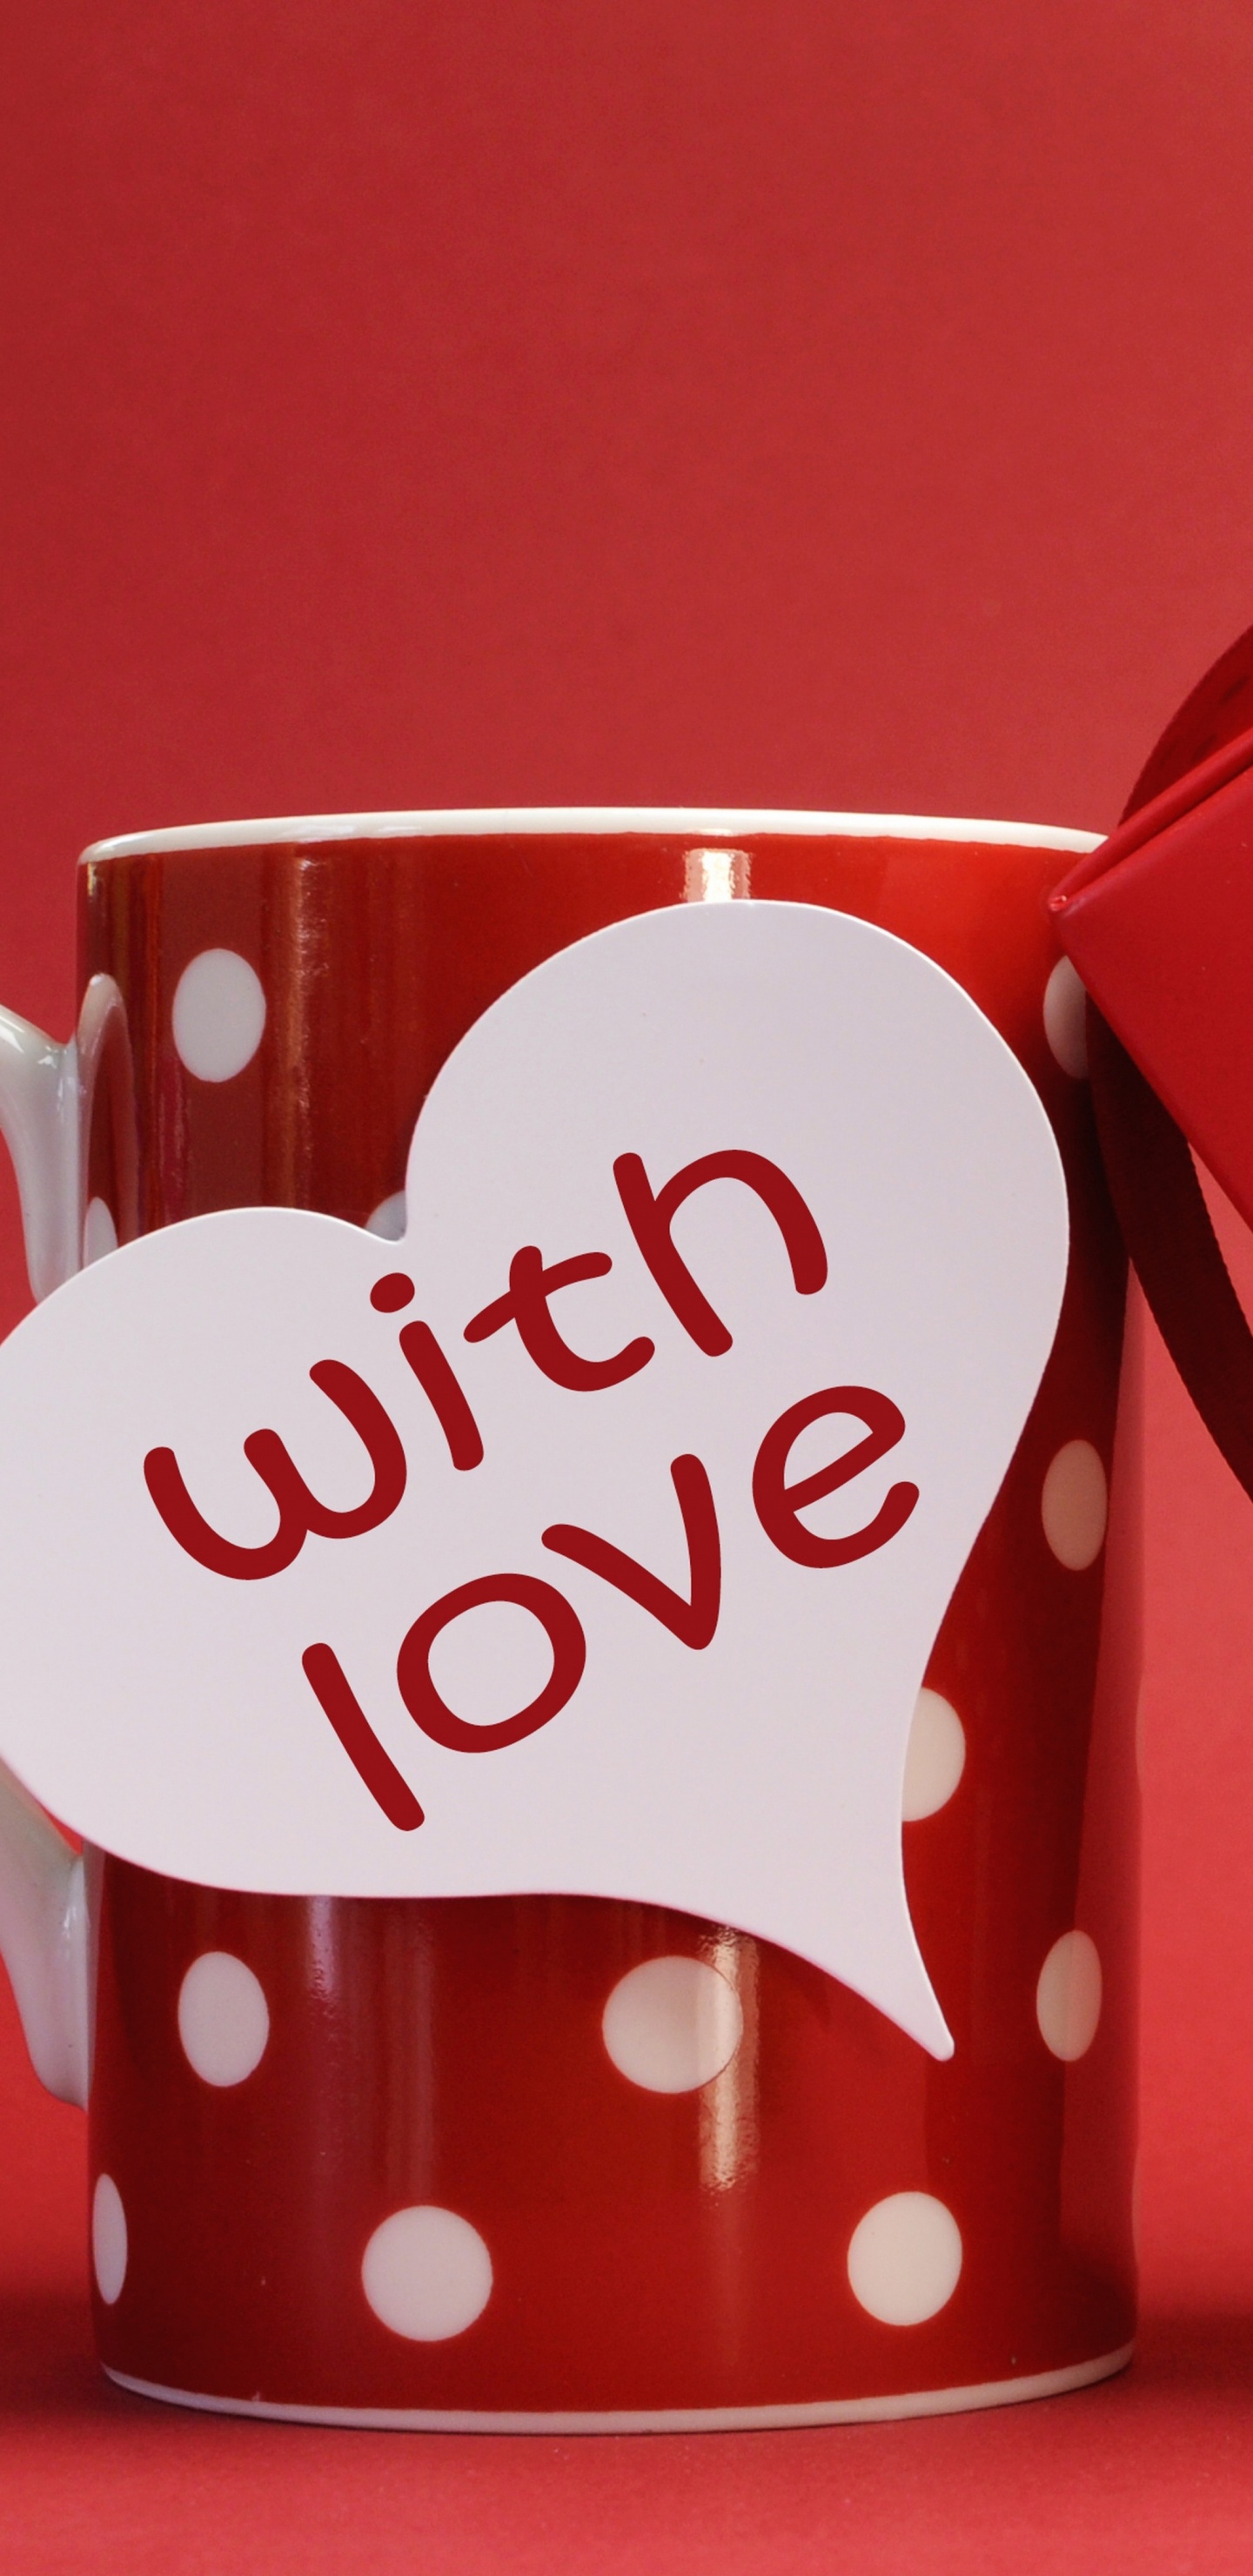 Romantik, Valentines Tag, Herzen, Liebe, Cup. Wallpaper in 1440x2960 Resolution